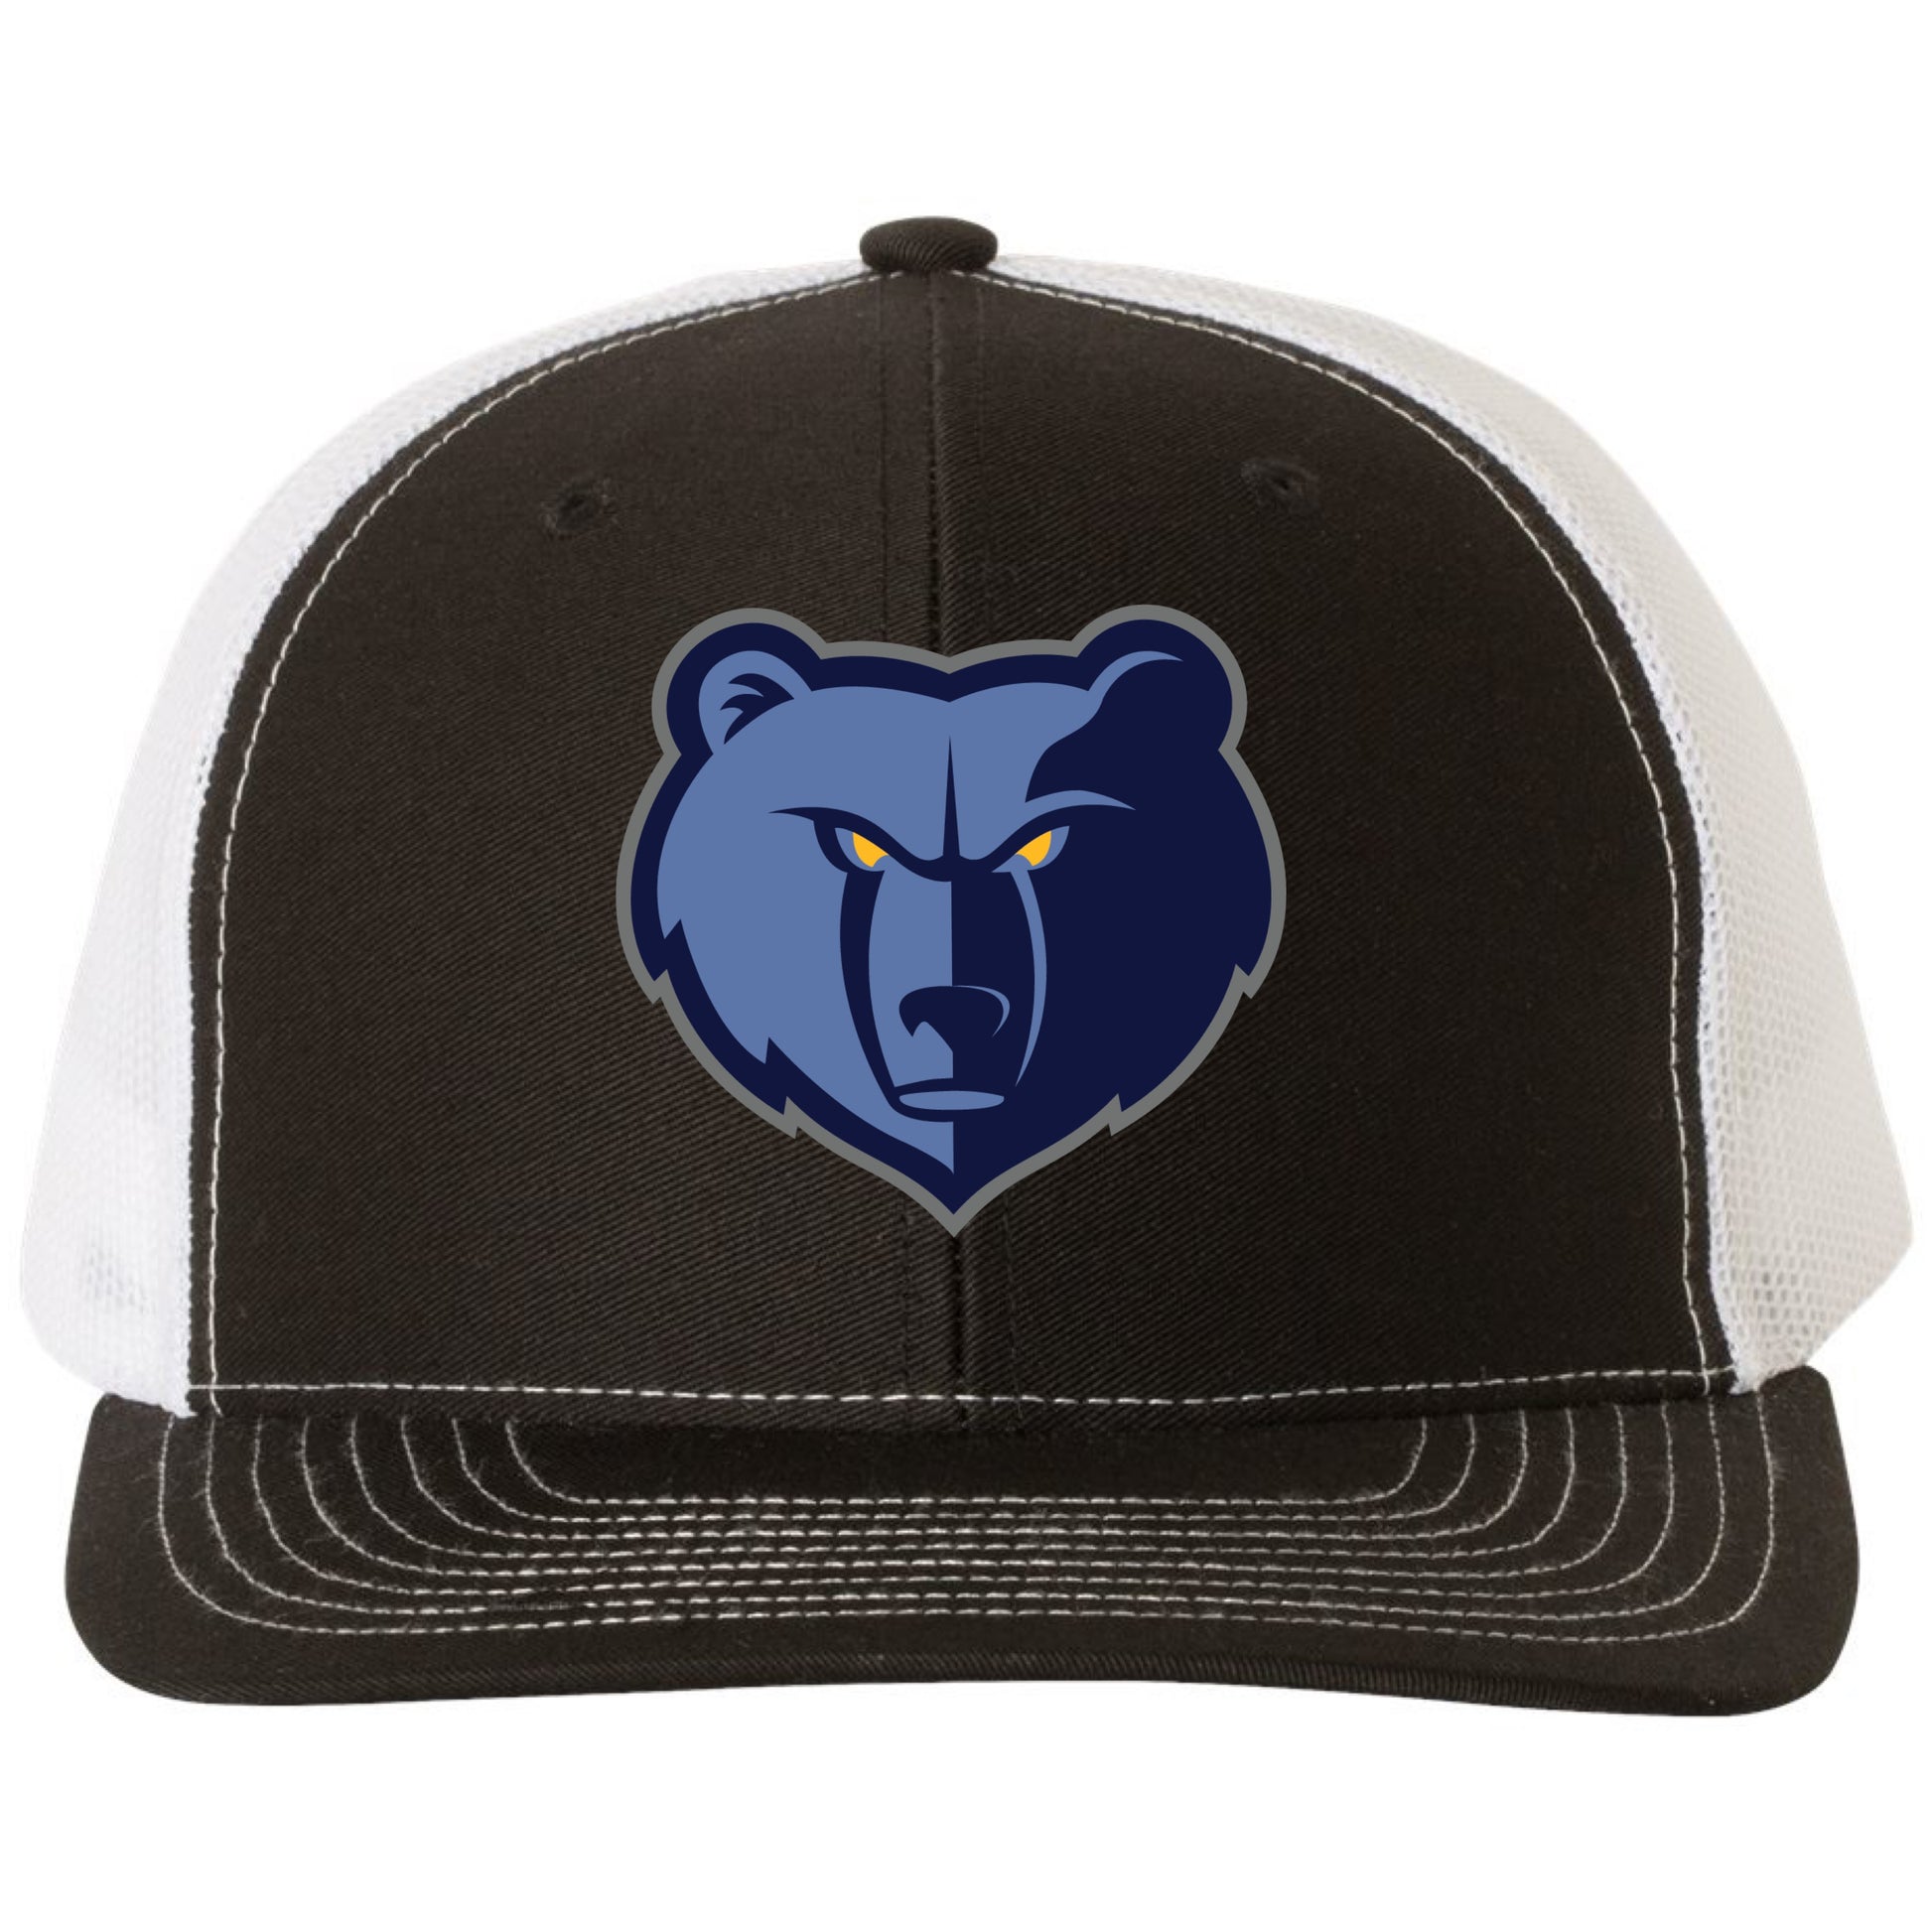 Memphis Grizzlies 3D Classic YP Snapback Trucker Hat- Black/ White - Ten Gallon Hat Co.